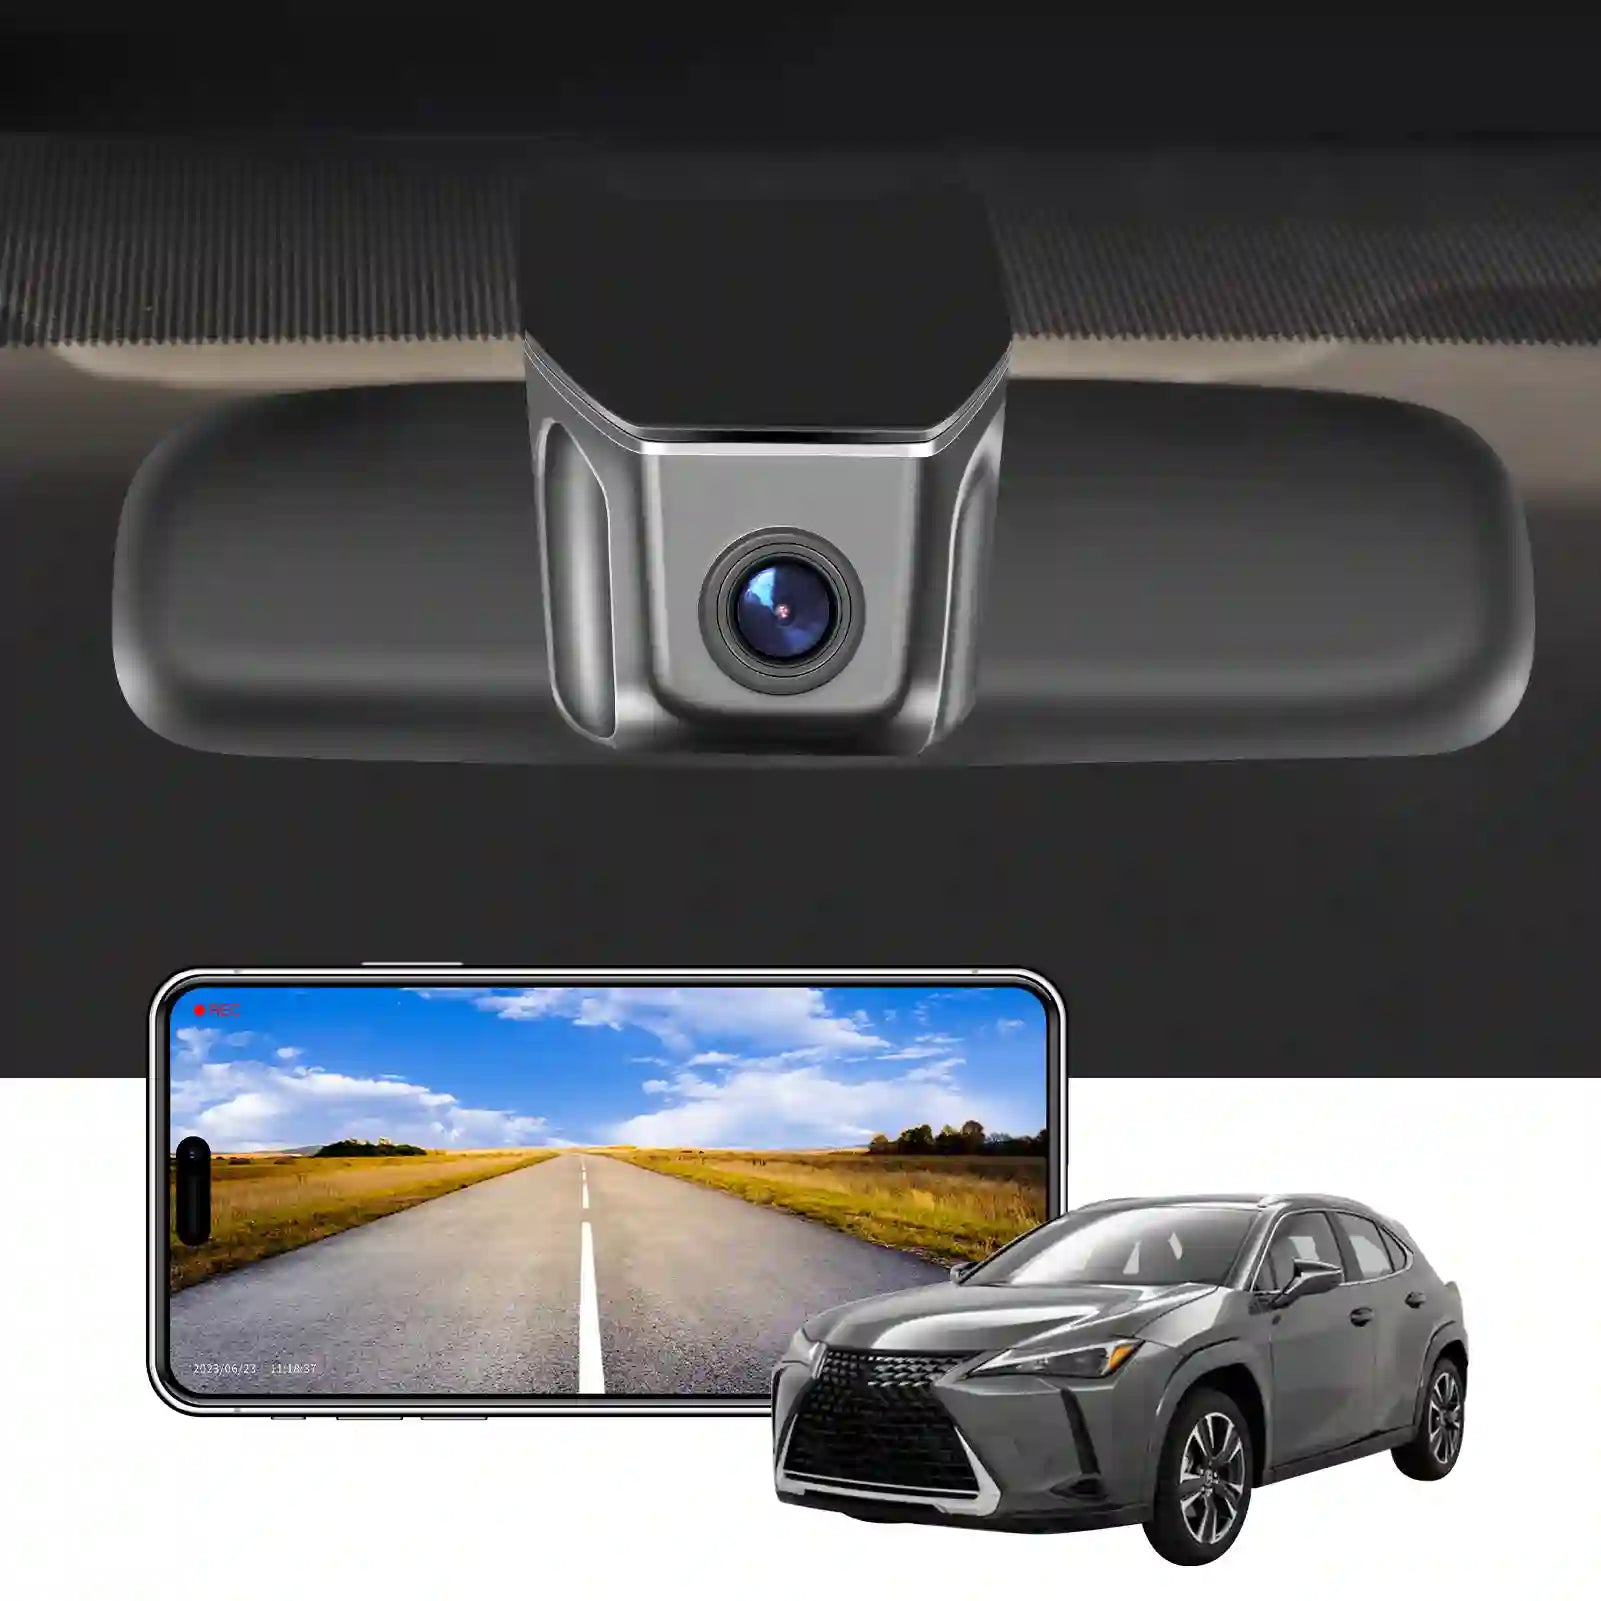 Lexus UX model A dash camera 